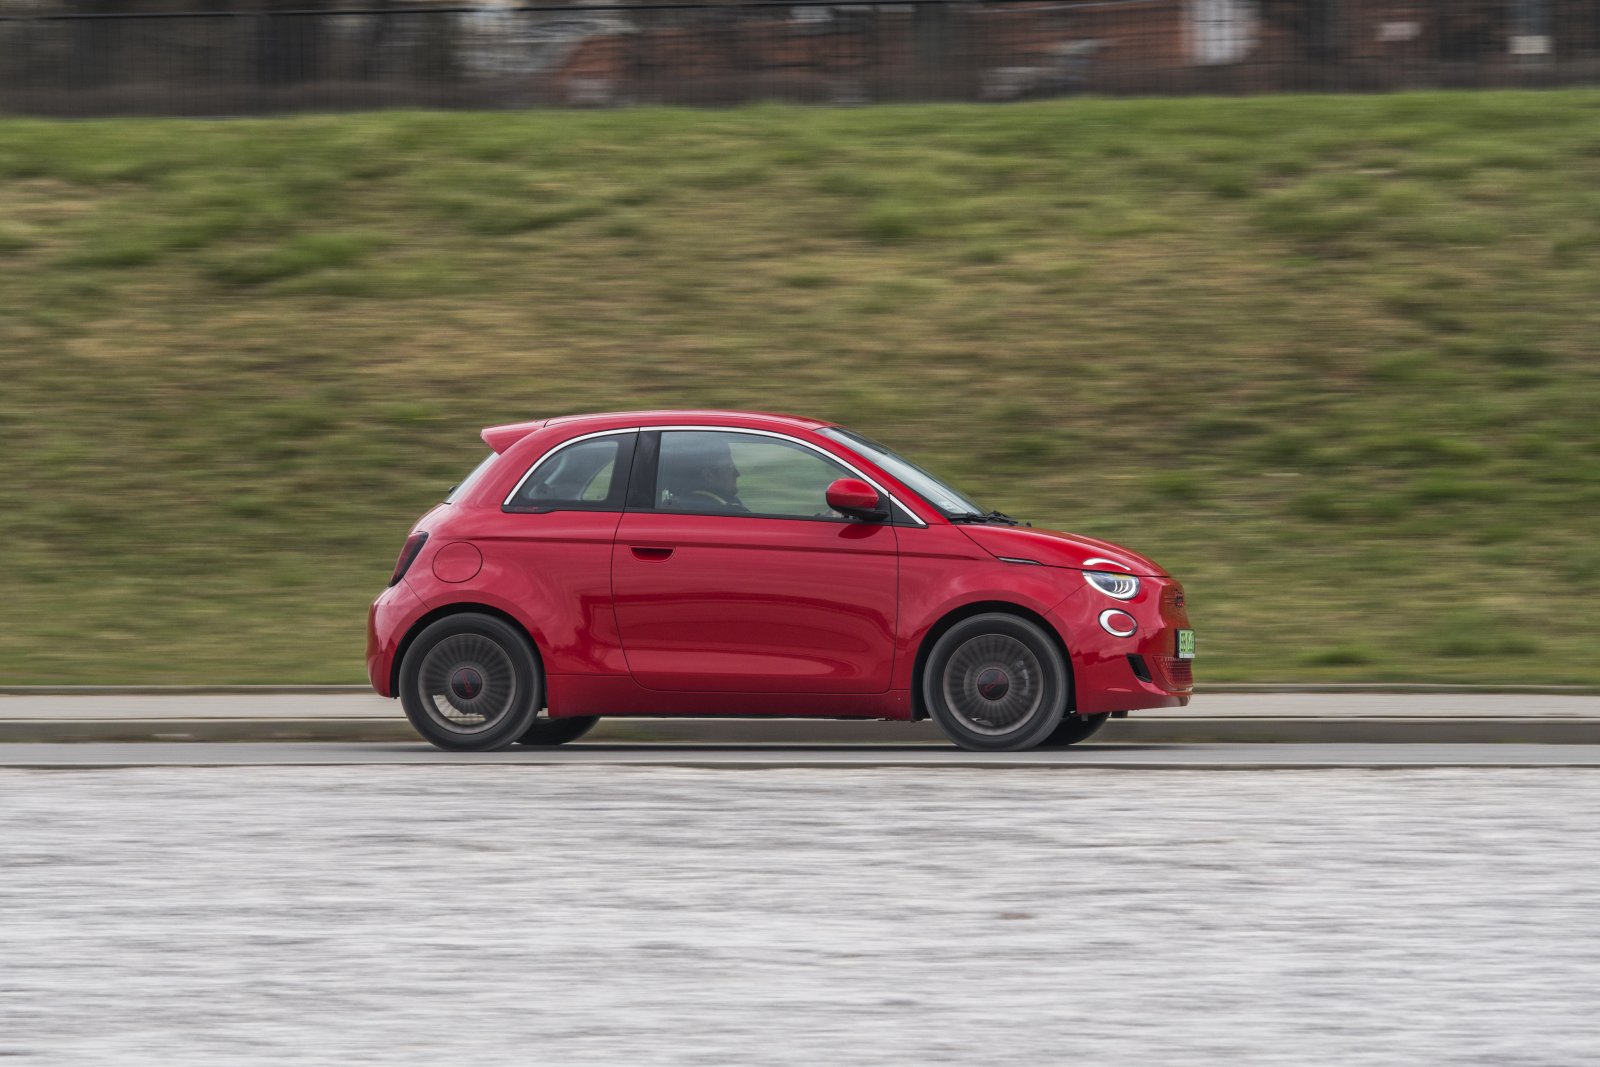 Fiat zapewnia kierowcy lepszy kontakt z drogą - i więcej frajdy z jazdy, a z 16-calowymi kołami jest nieco bardziej komfortowy od Hondy.